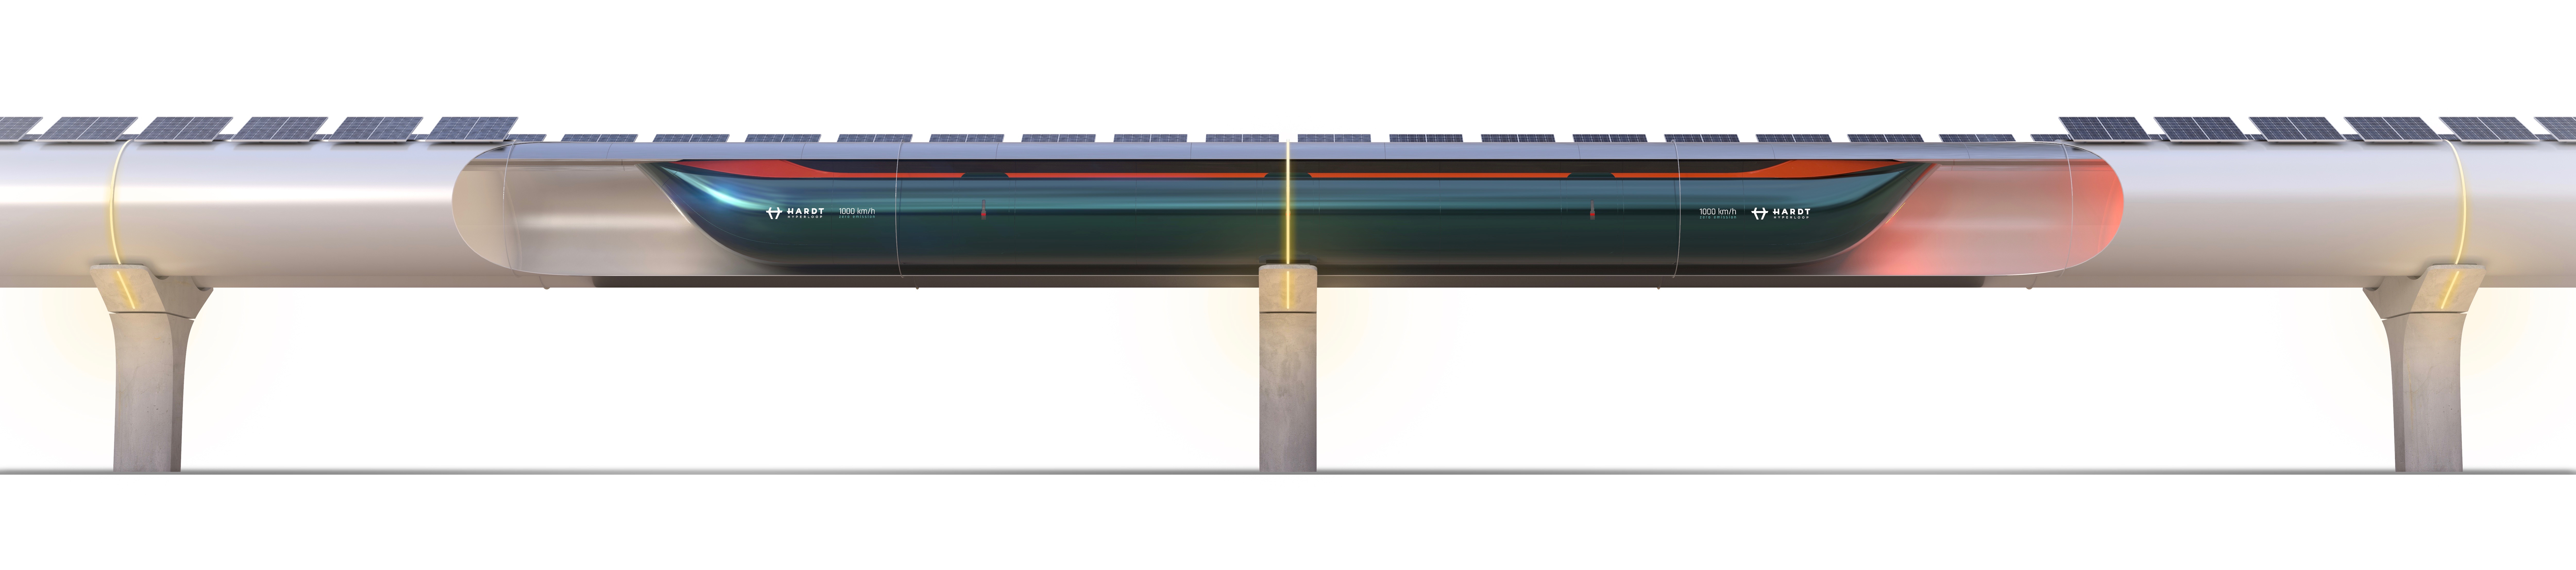 Hyperloop, bron: Hardt Hyperloop